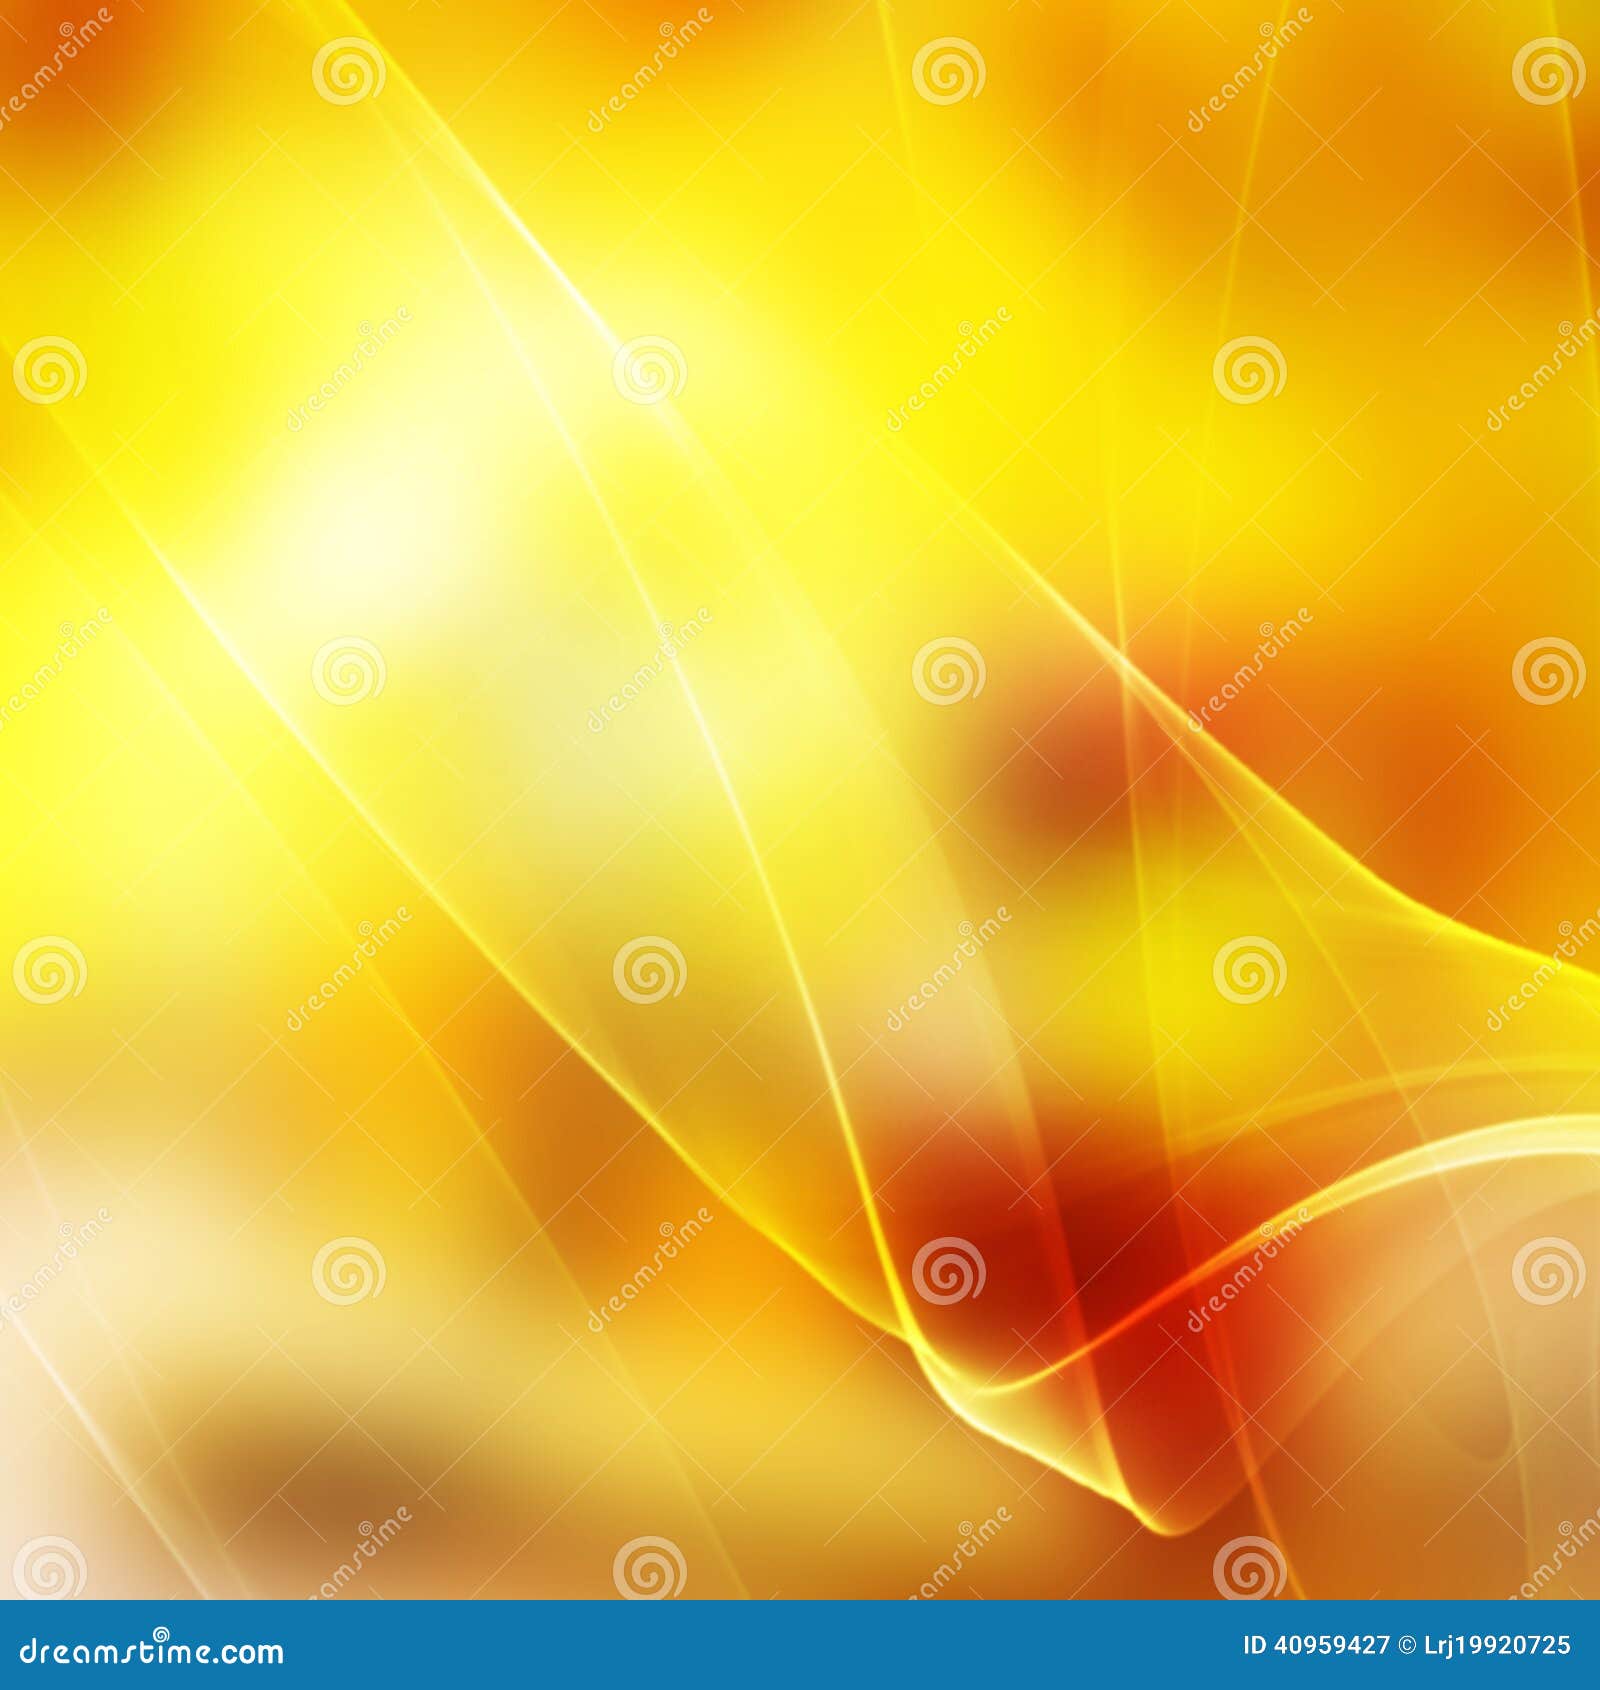 Light Orange Abstract Background Stock Image - Image: 40959427